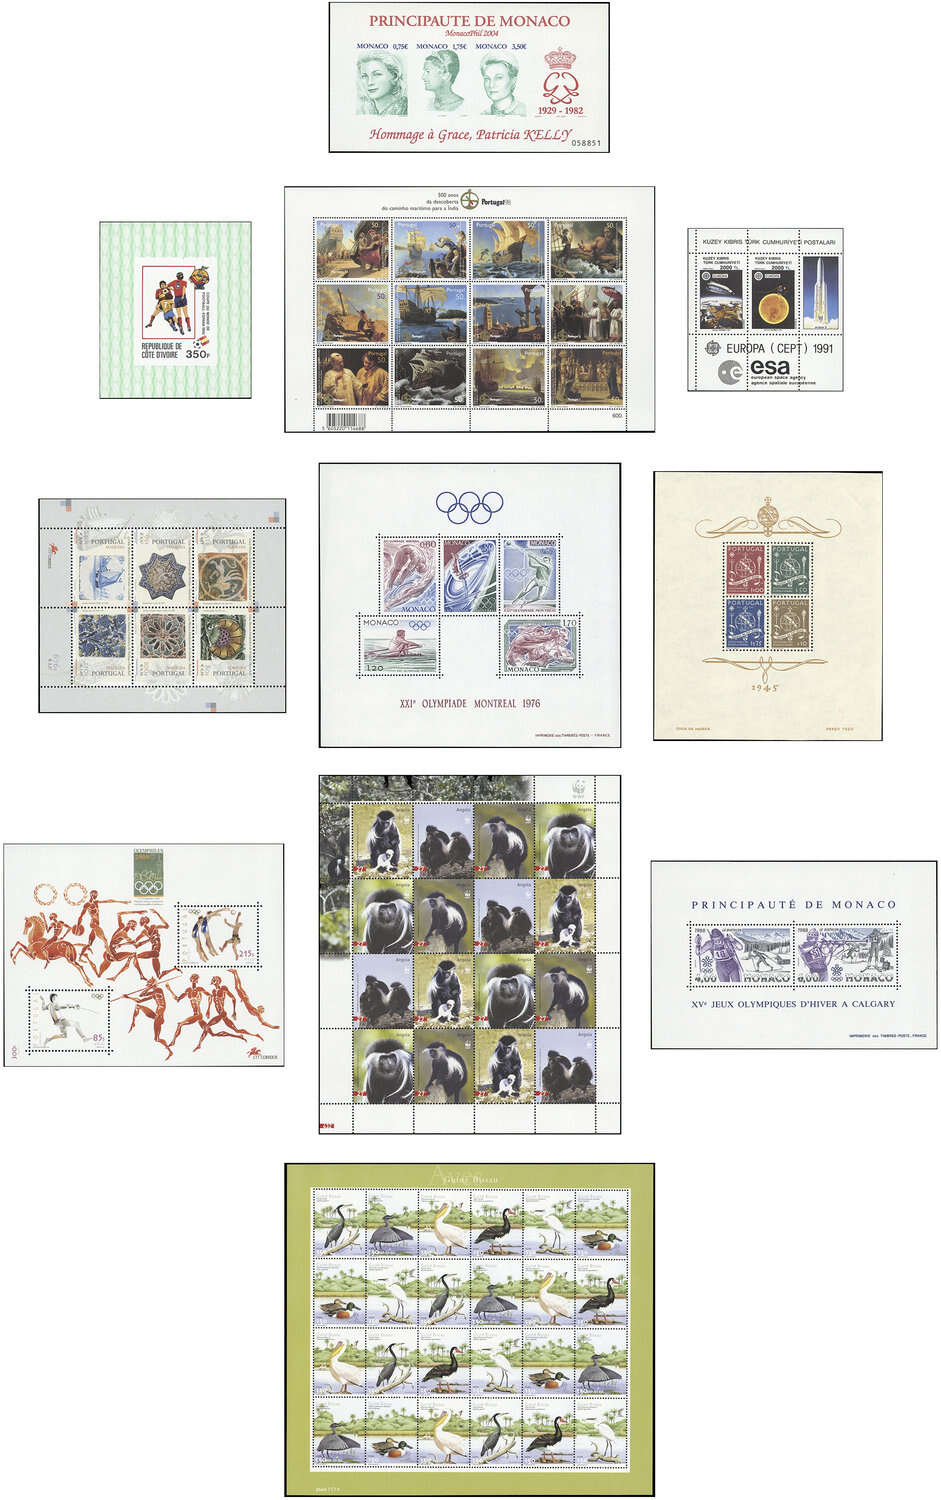 Lot 16 - sammlungen und posten händlernachlässe -  Deutsche Briefmarken AG 6th Large Lot Auction Deutsche Briefmarken AG